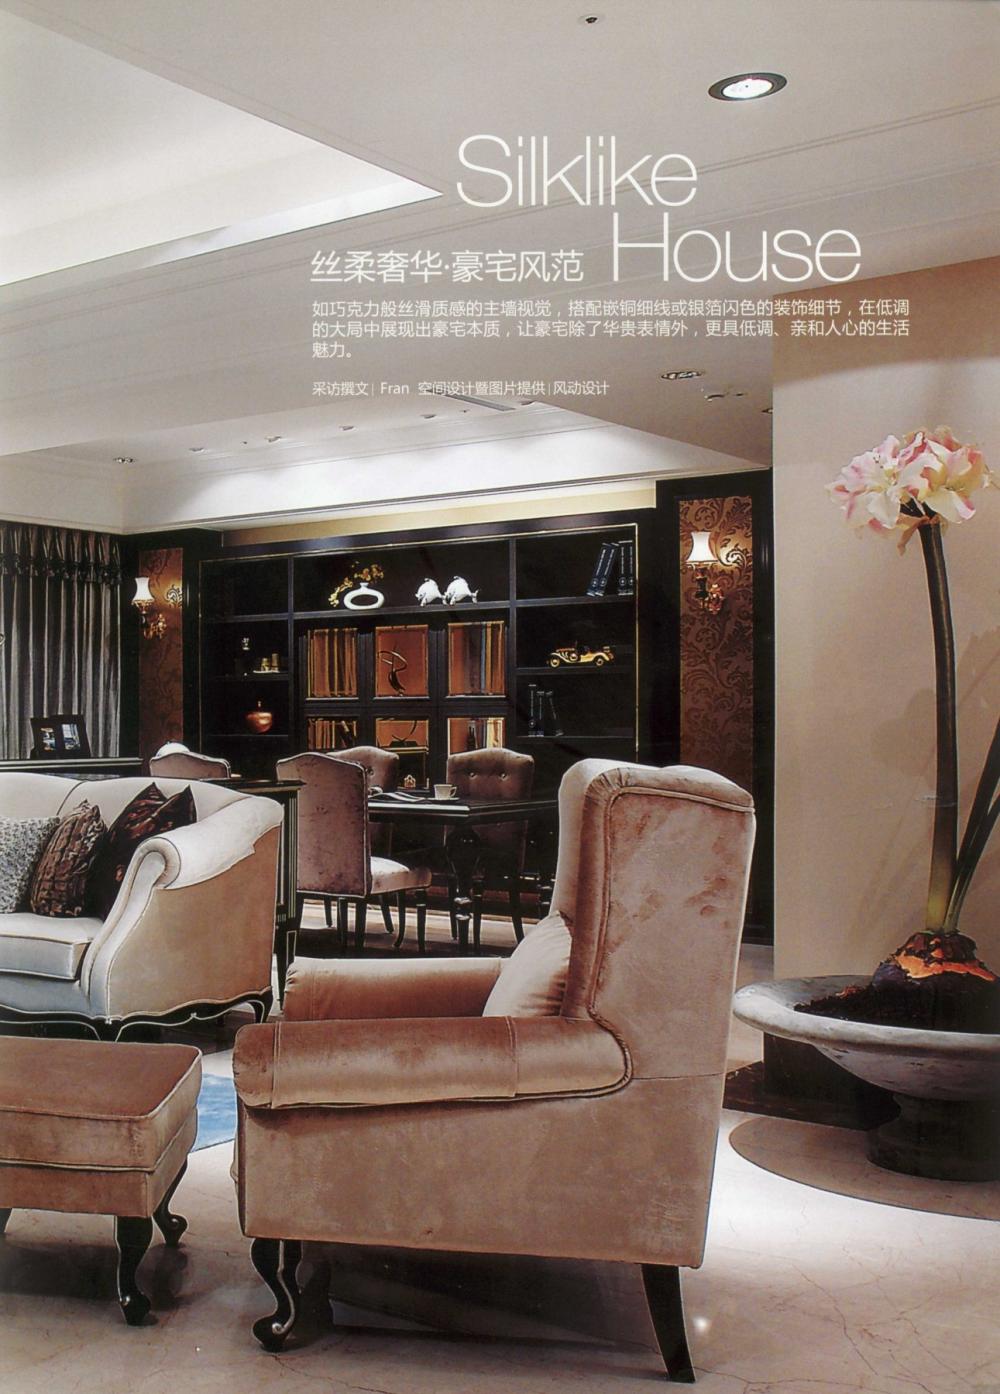 25 台湾名门府邸 taiwans luxury mansion_13671144854 0009.jpg